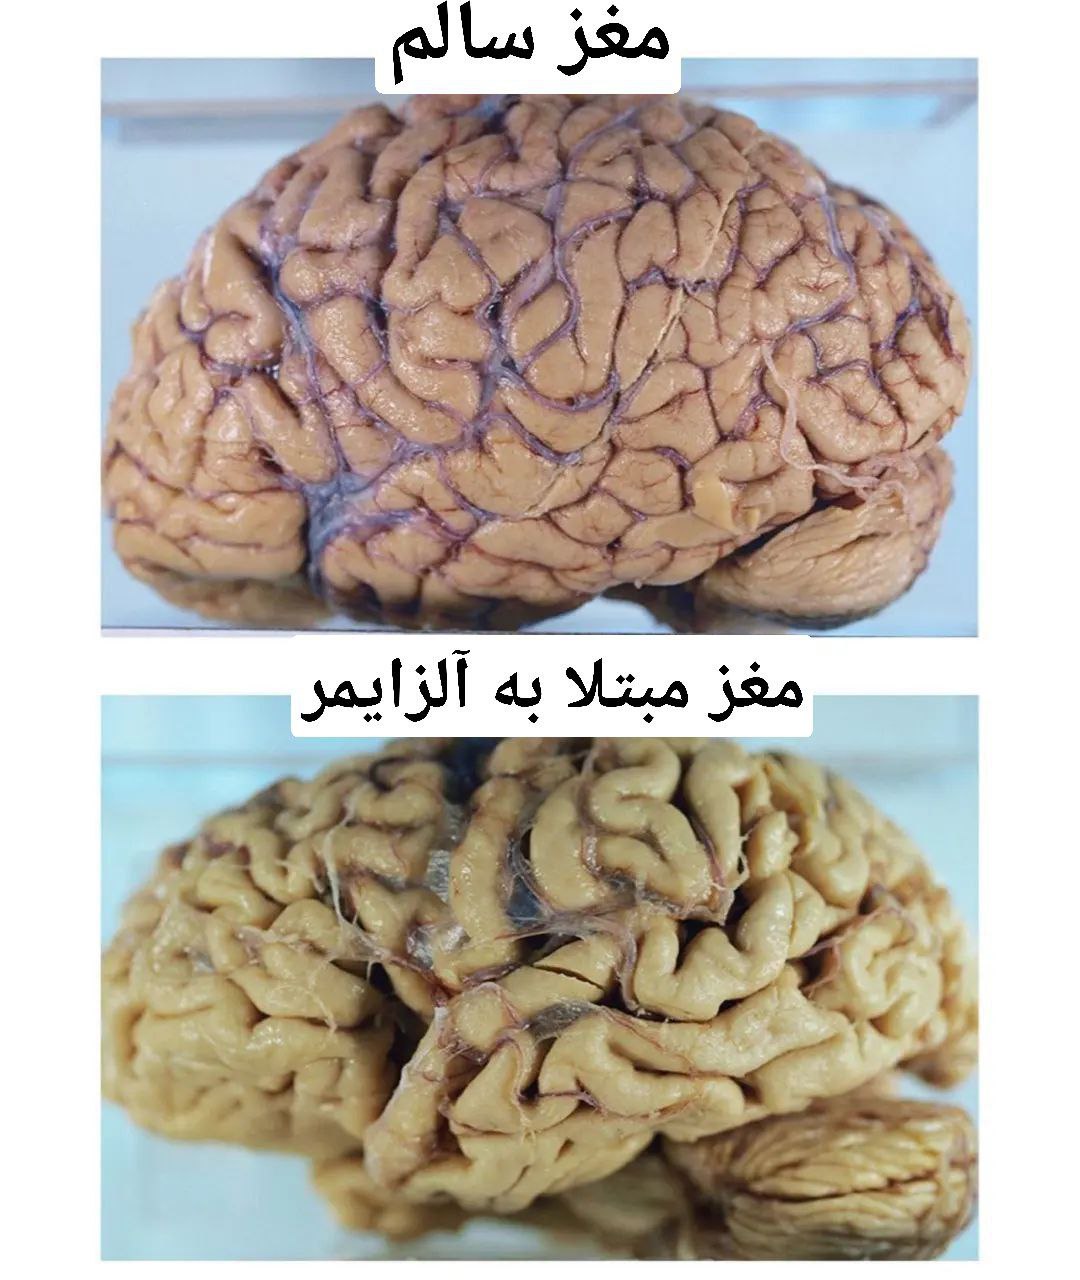 تصویر عجیب از تفاوت مغز فرد سالم با مغز یک فرد مبتلا به آلزایمر+عکس